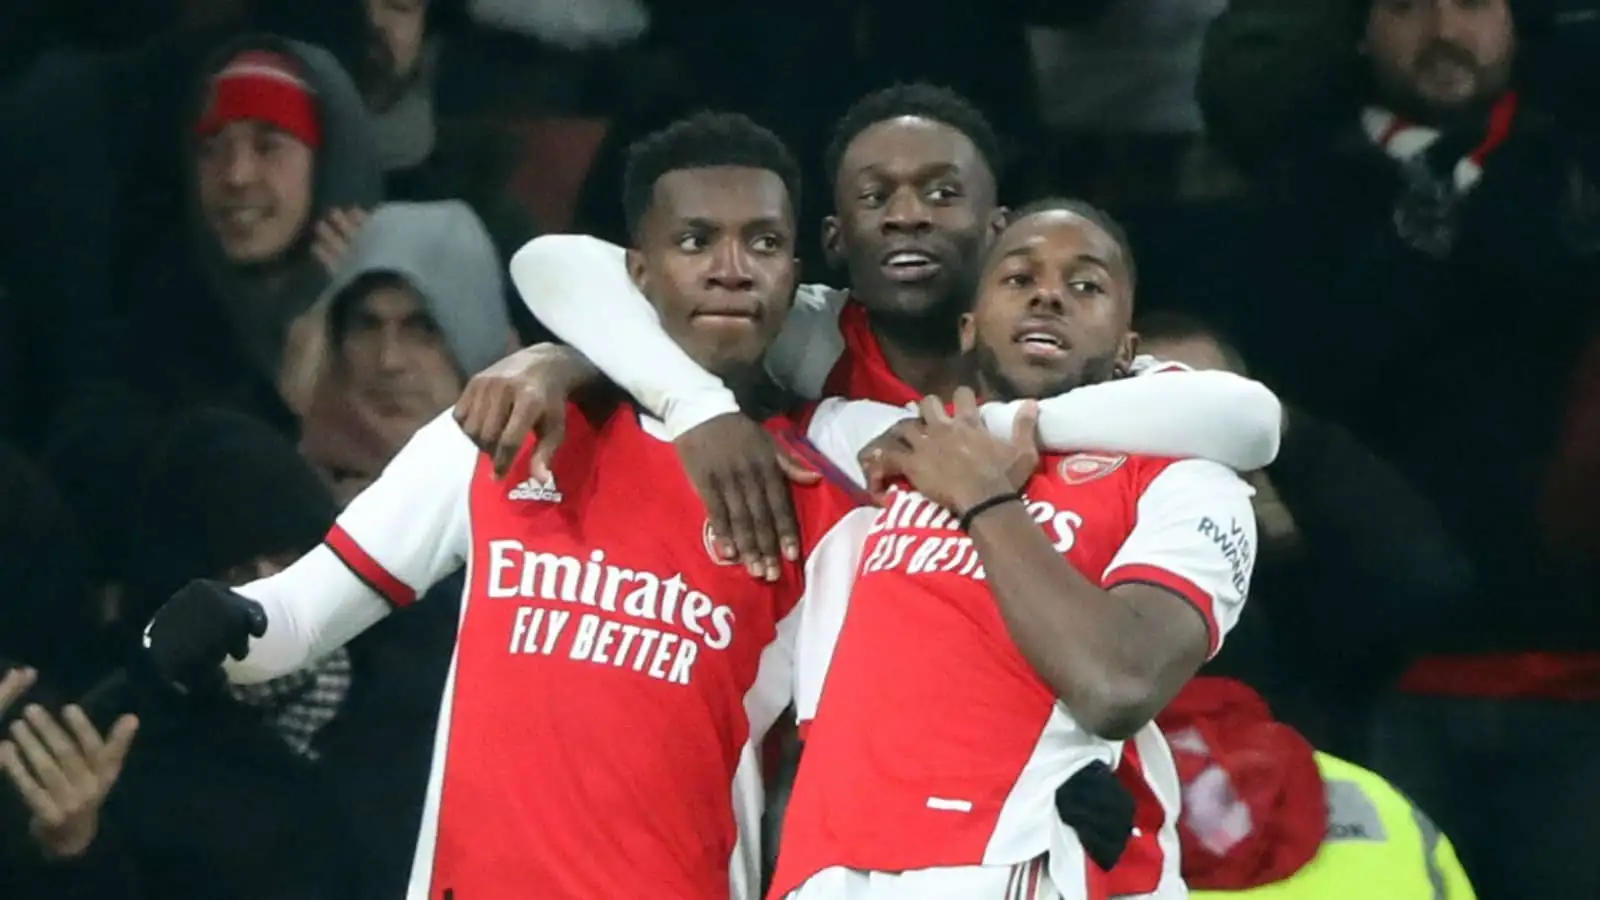 Arsenal trio Eddie Nketiah, Folarin Balogun and Nuno Tavares